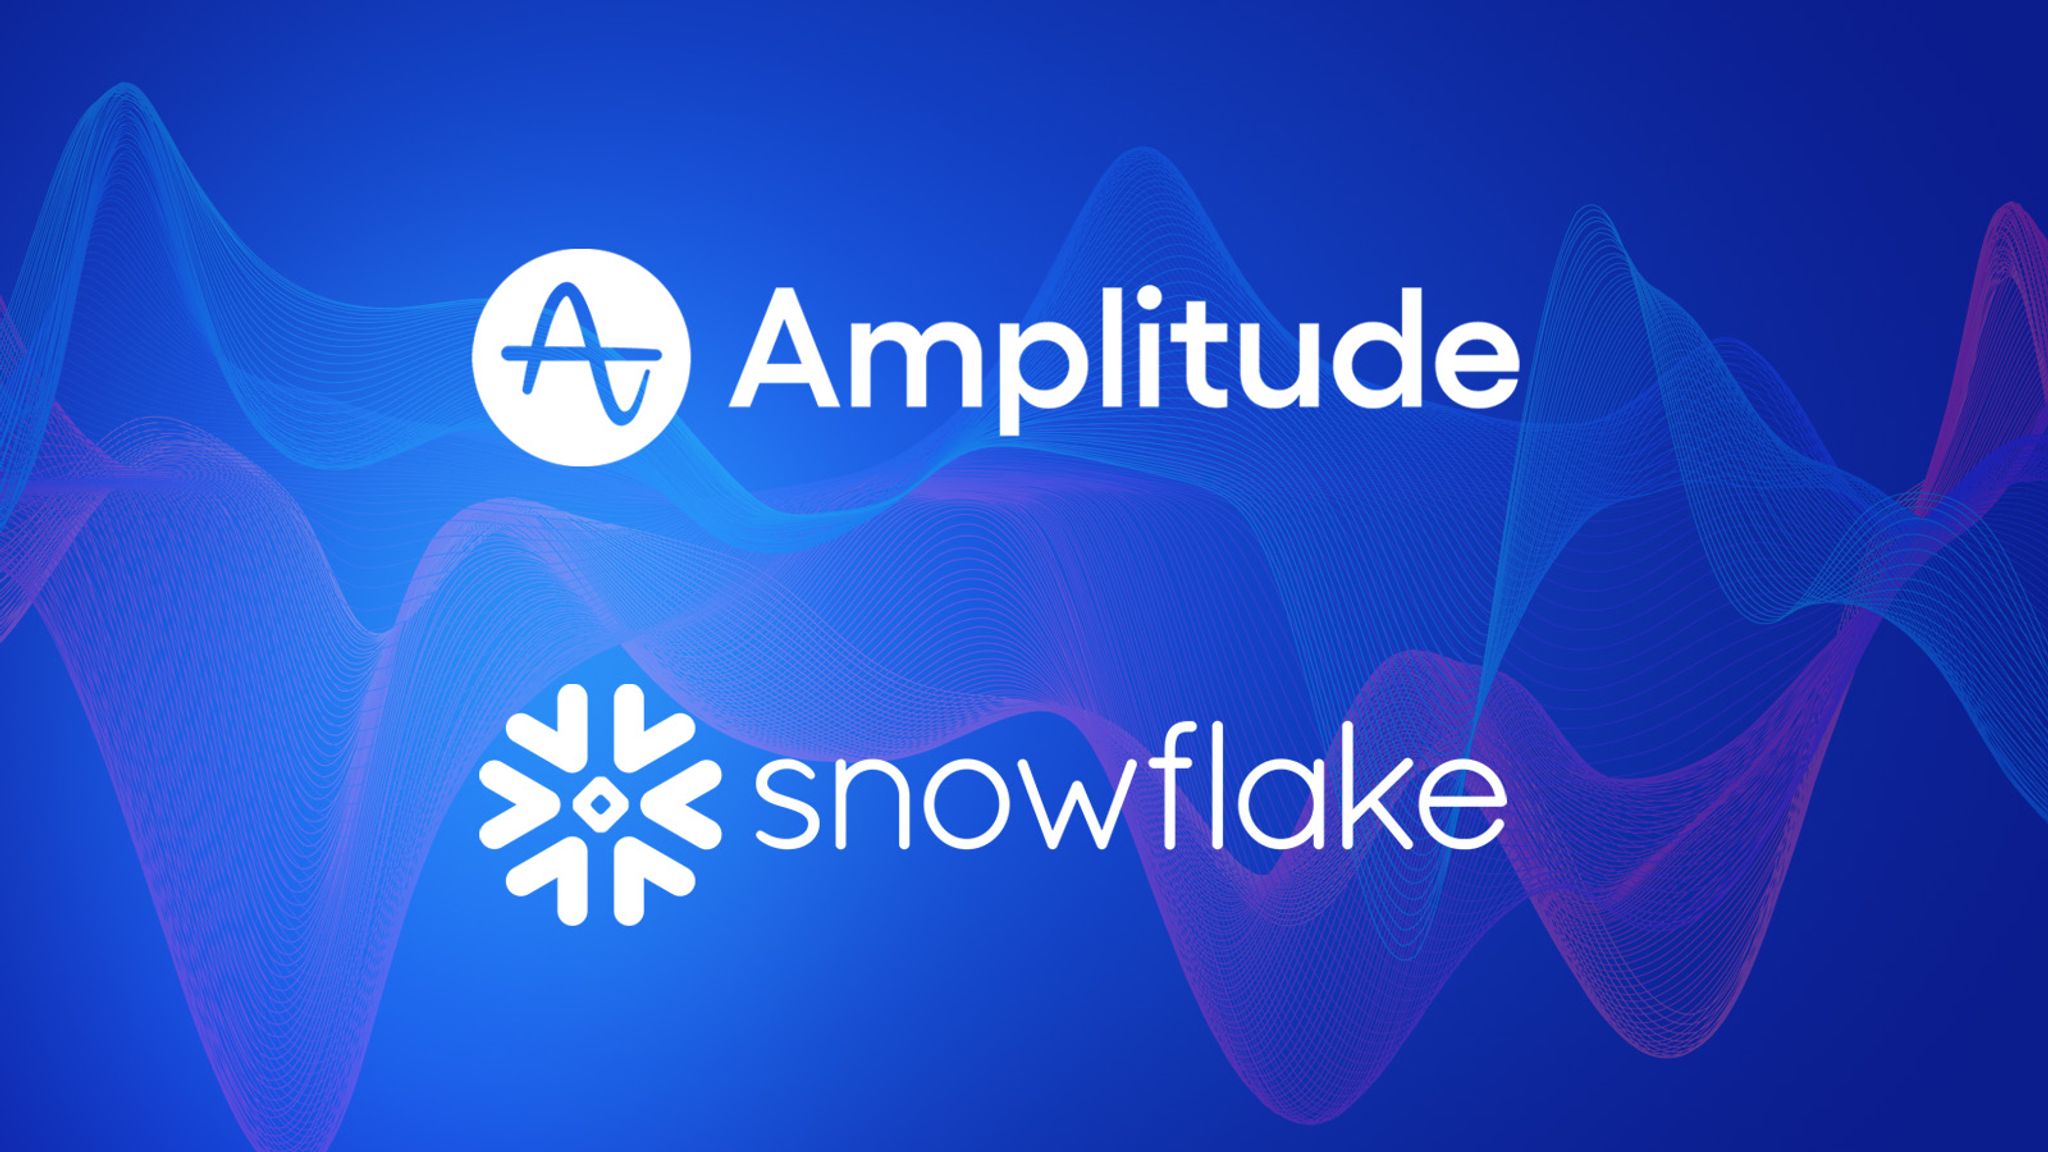 Amplitude and Snowflake logos